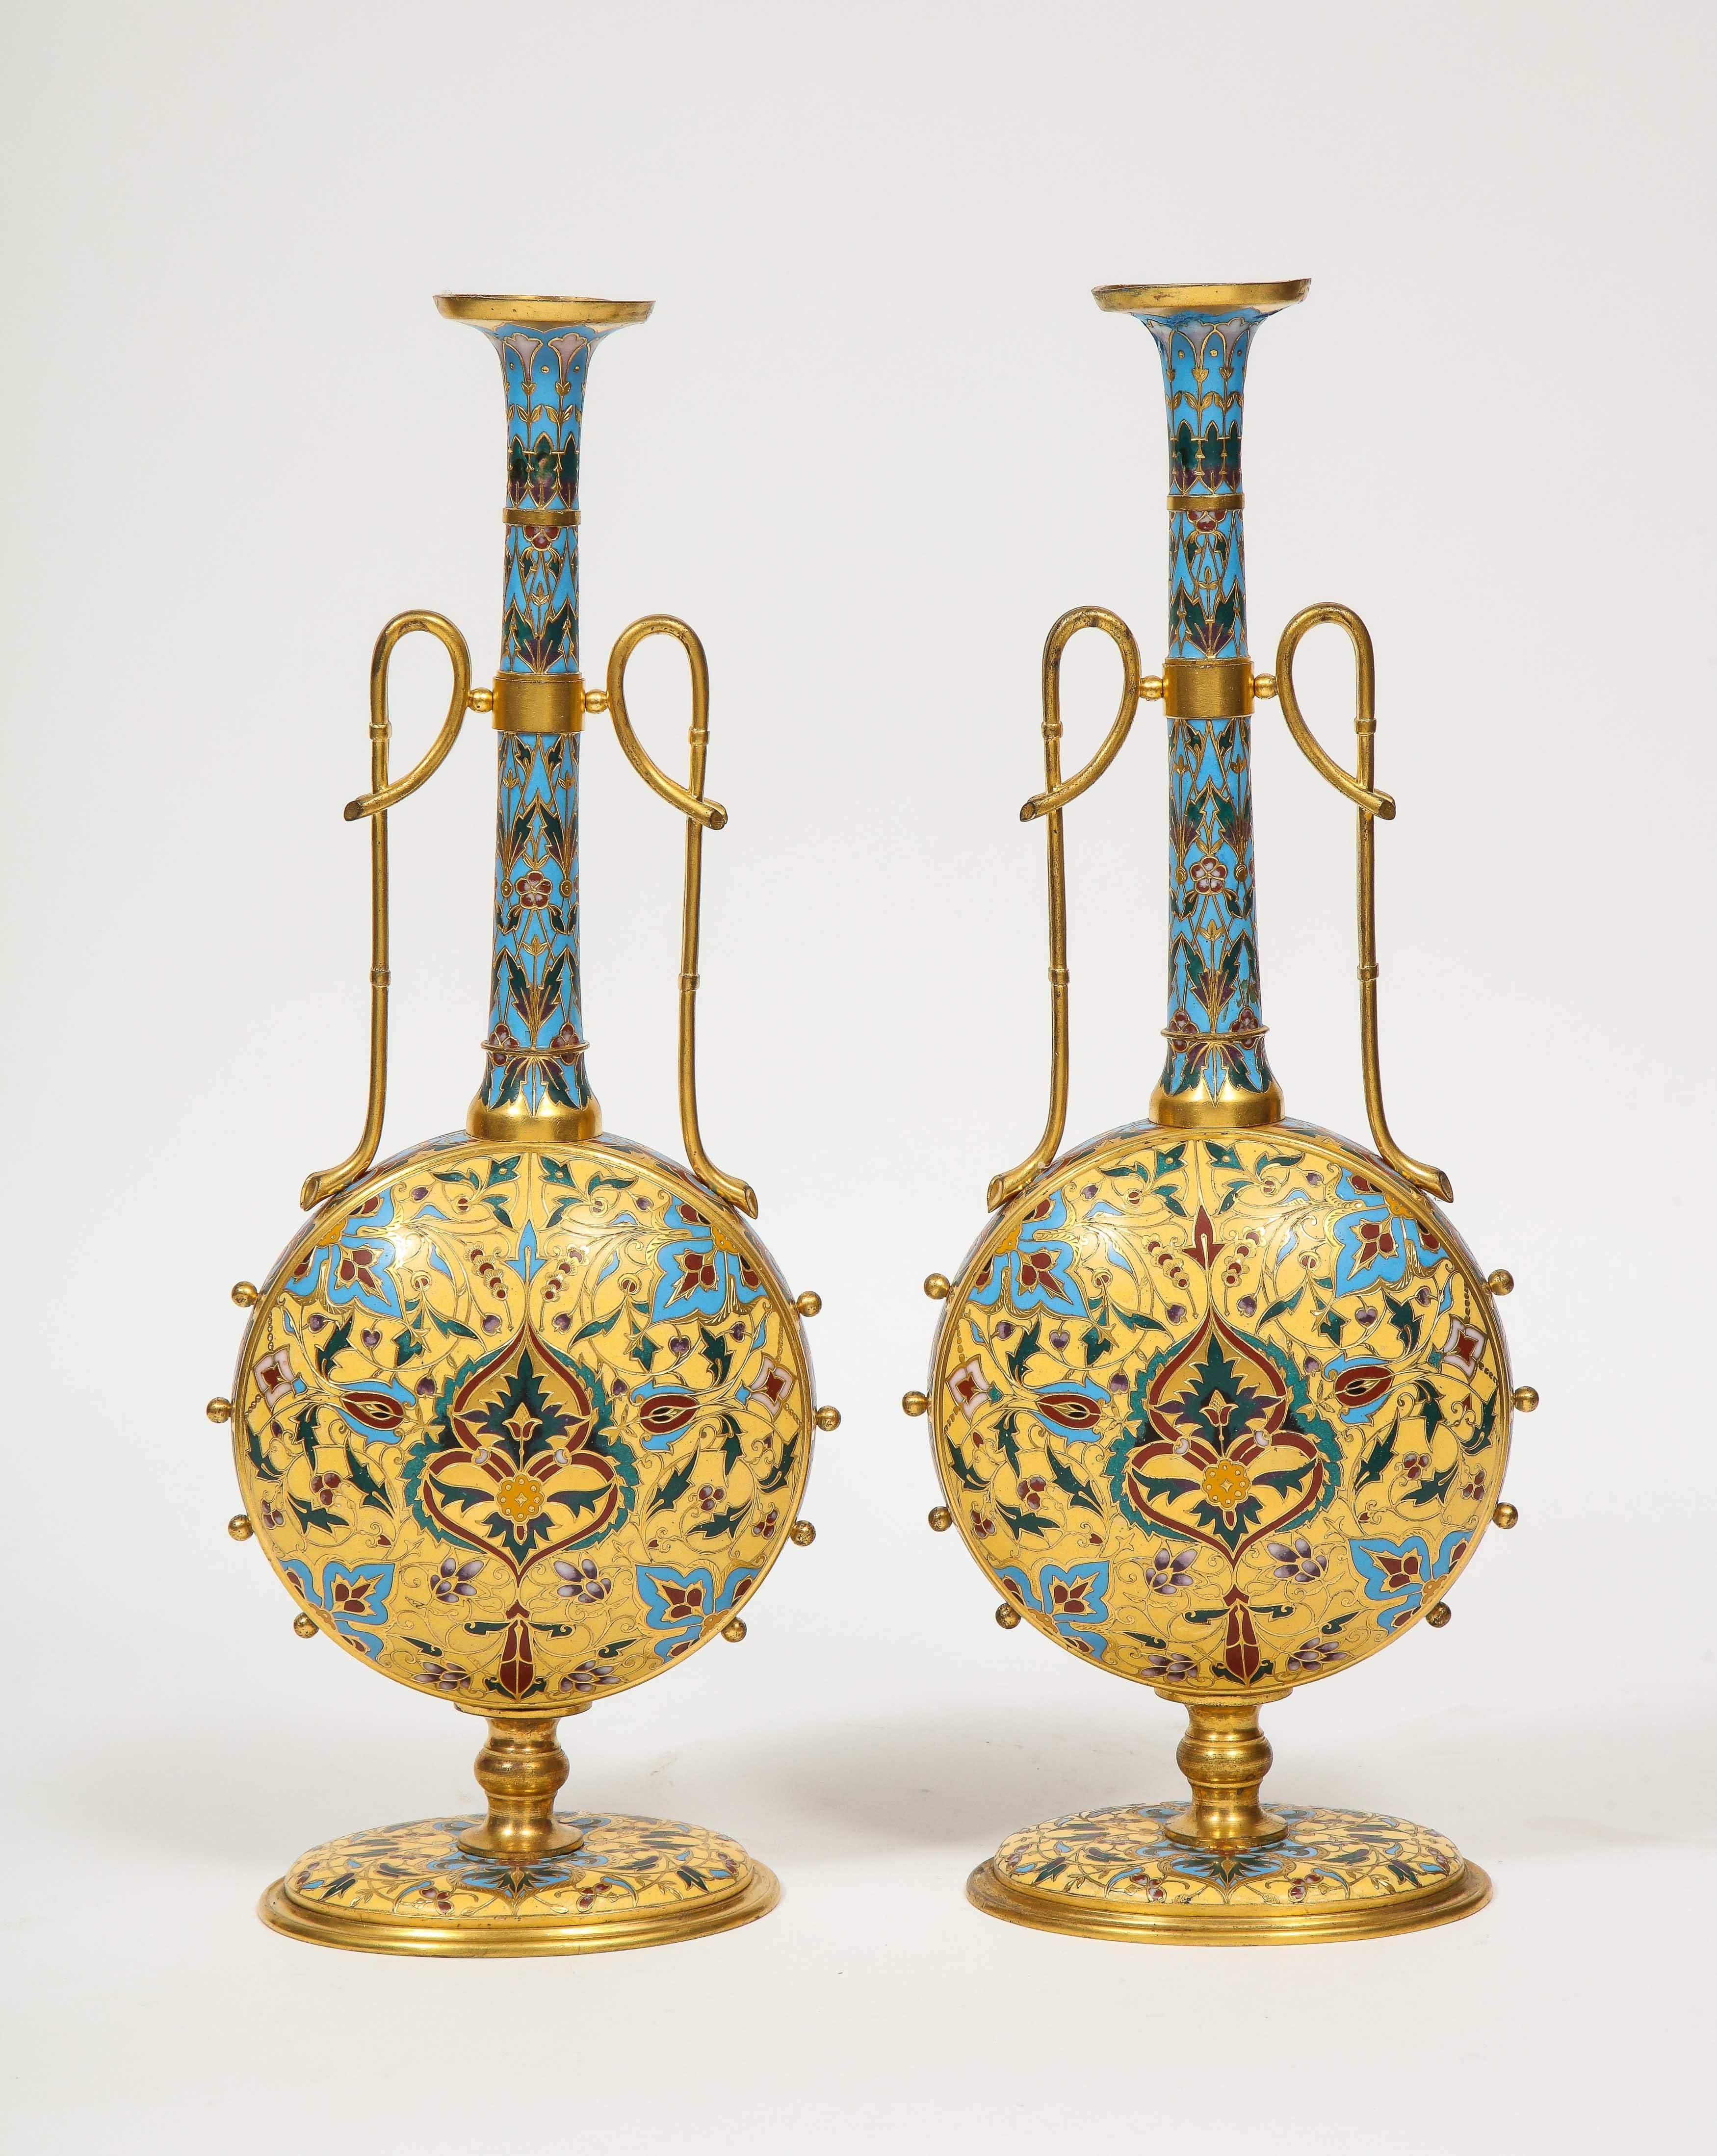 Une paire de vases Ferdinand Barbedienne en bronze doré et émail champlevé, extrêmement rare et de qualité musée, vers 1870, certainement conçue par Louis Constant Sevin. 

Forme très inhabituelle. Émaillé de couleurs vives, dans le goût